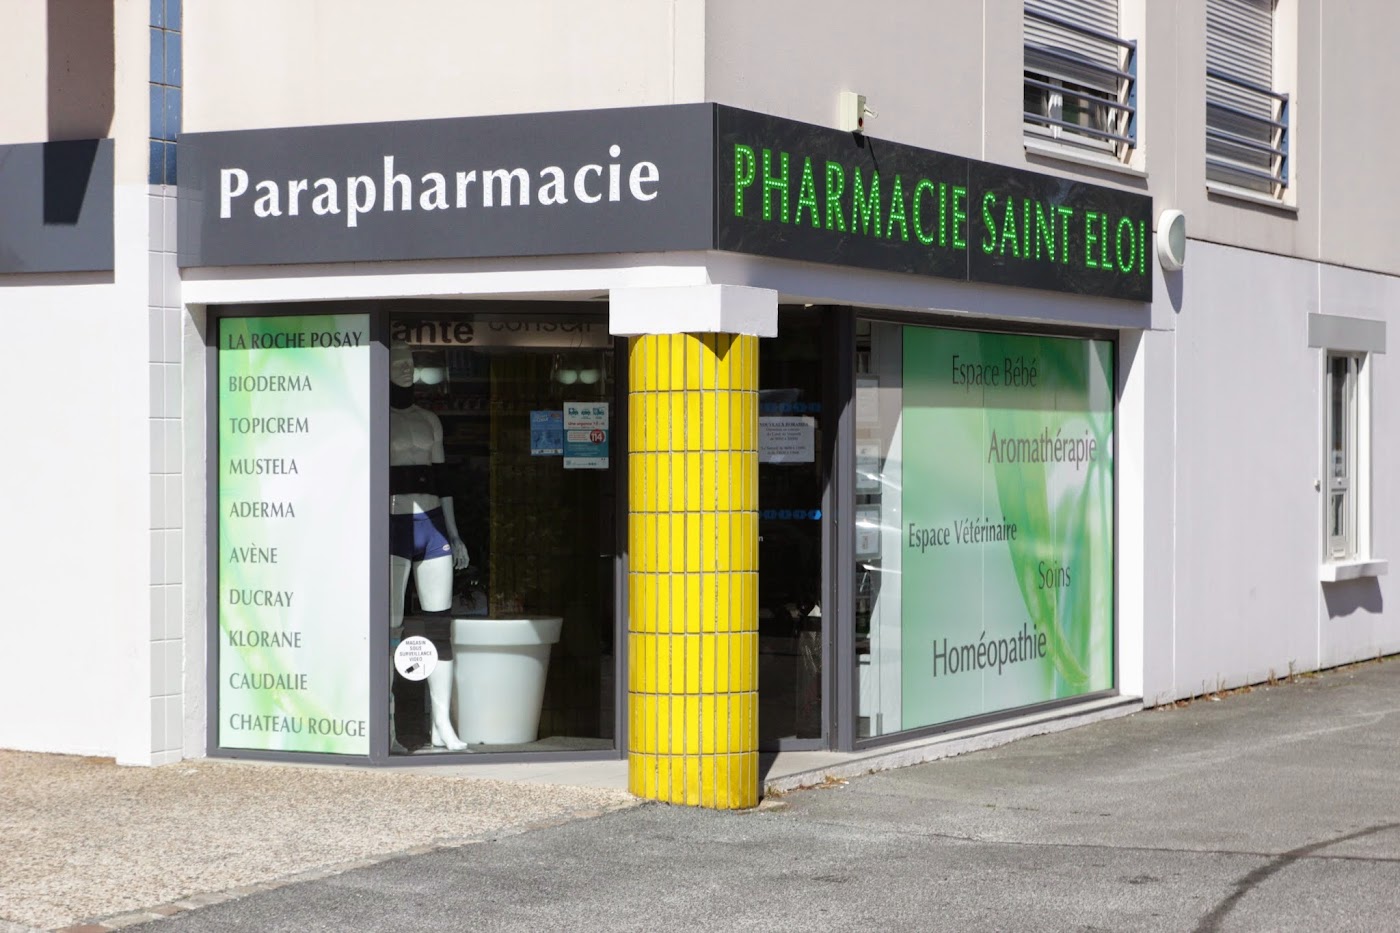 Pharmacie Saint-Eloi